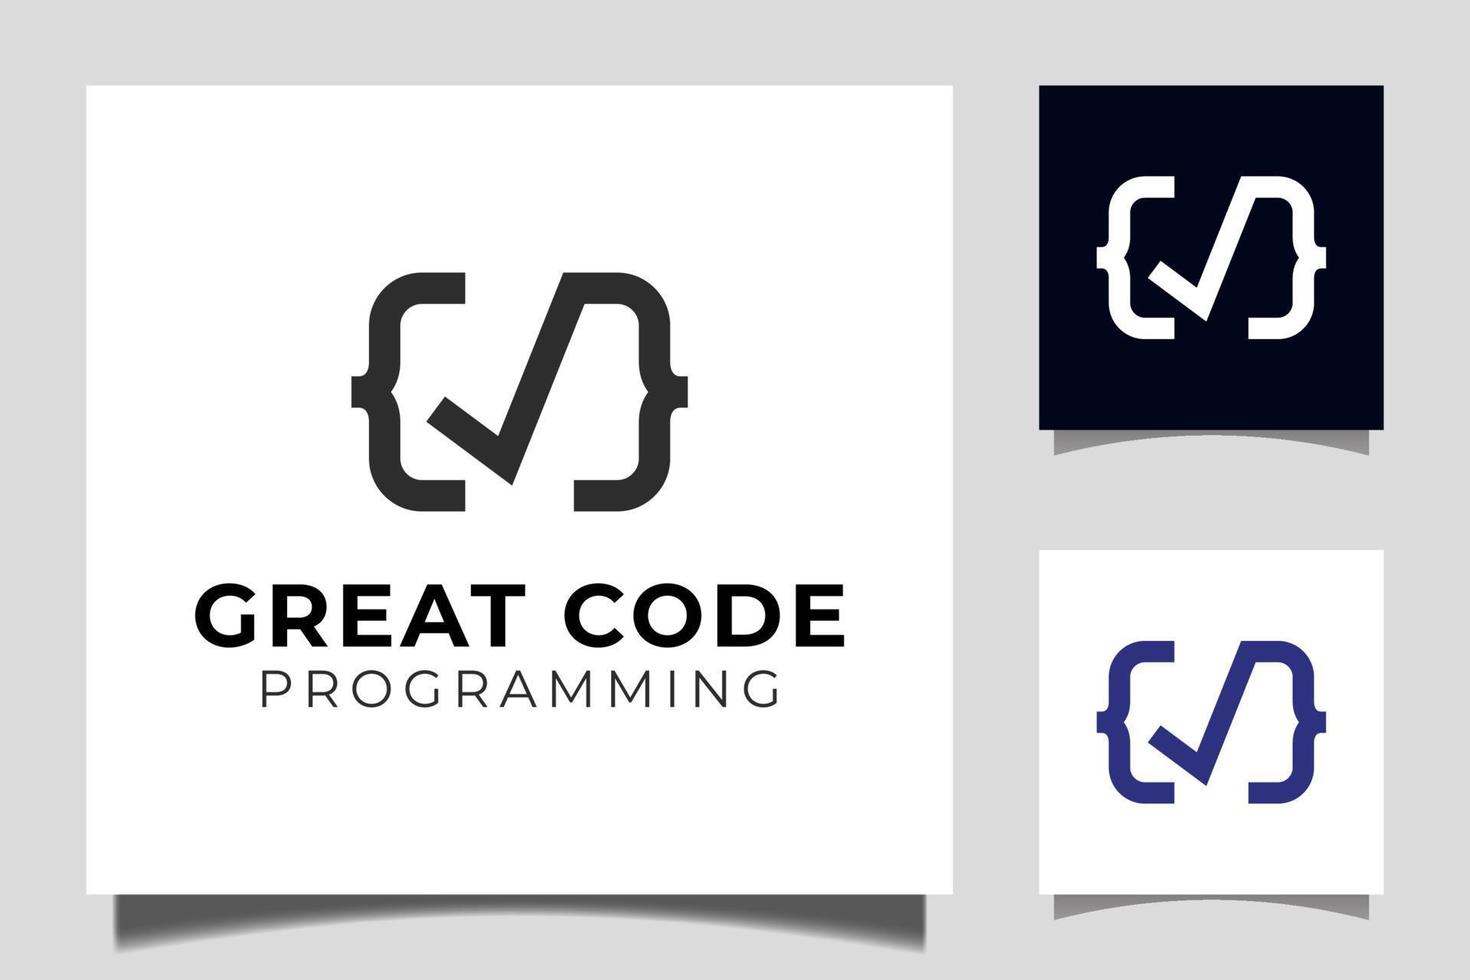 création de logo de grand code avec vérification, symbole vectoriel d'icône correct et valide pour le modèle de logo de codage et de programmation